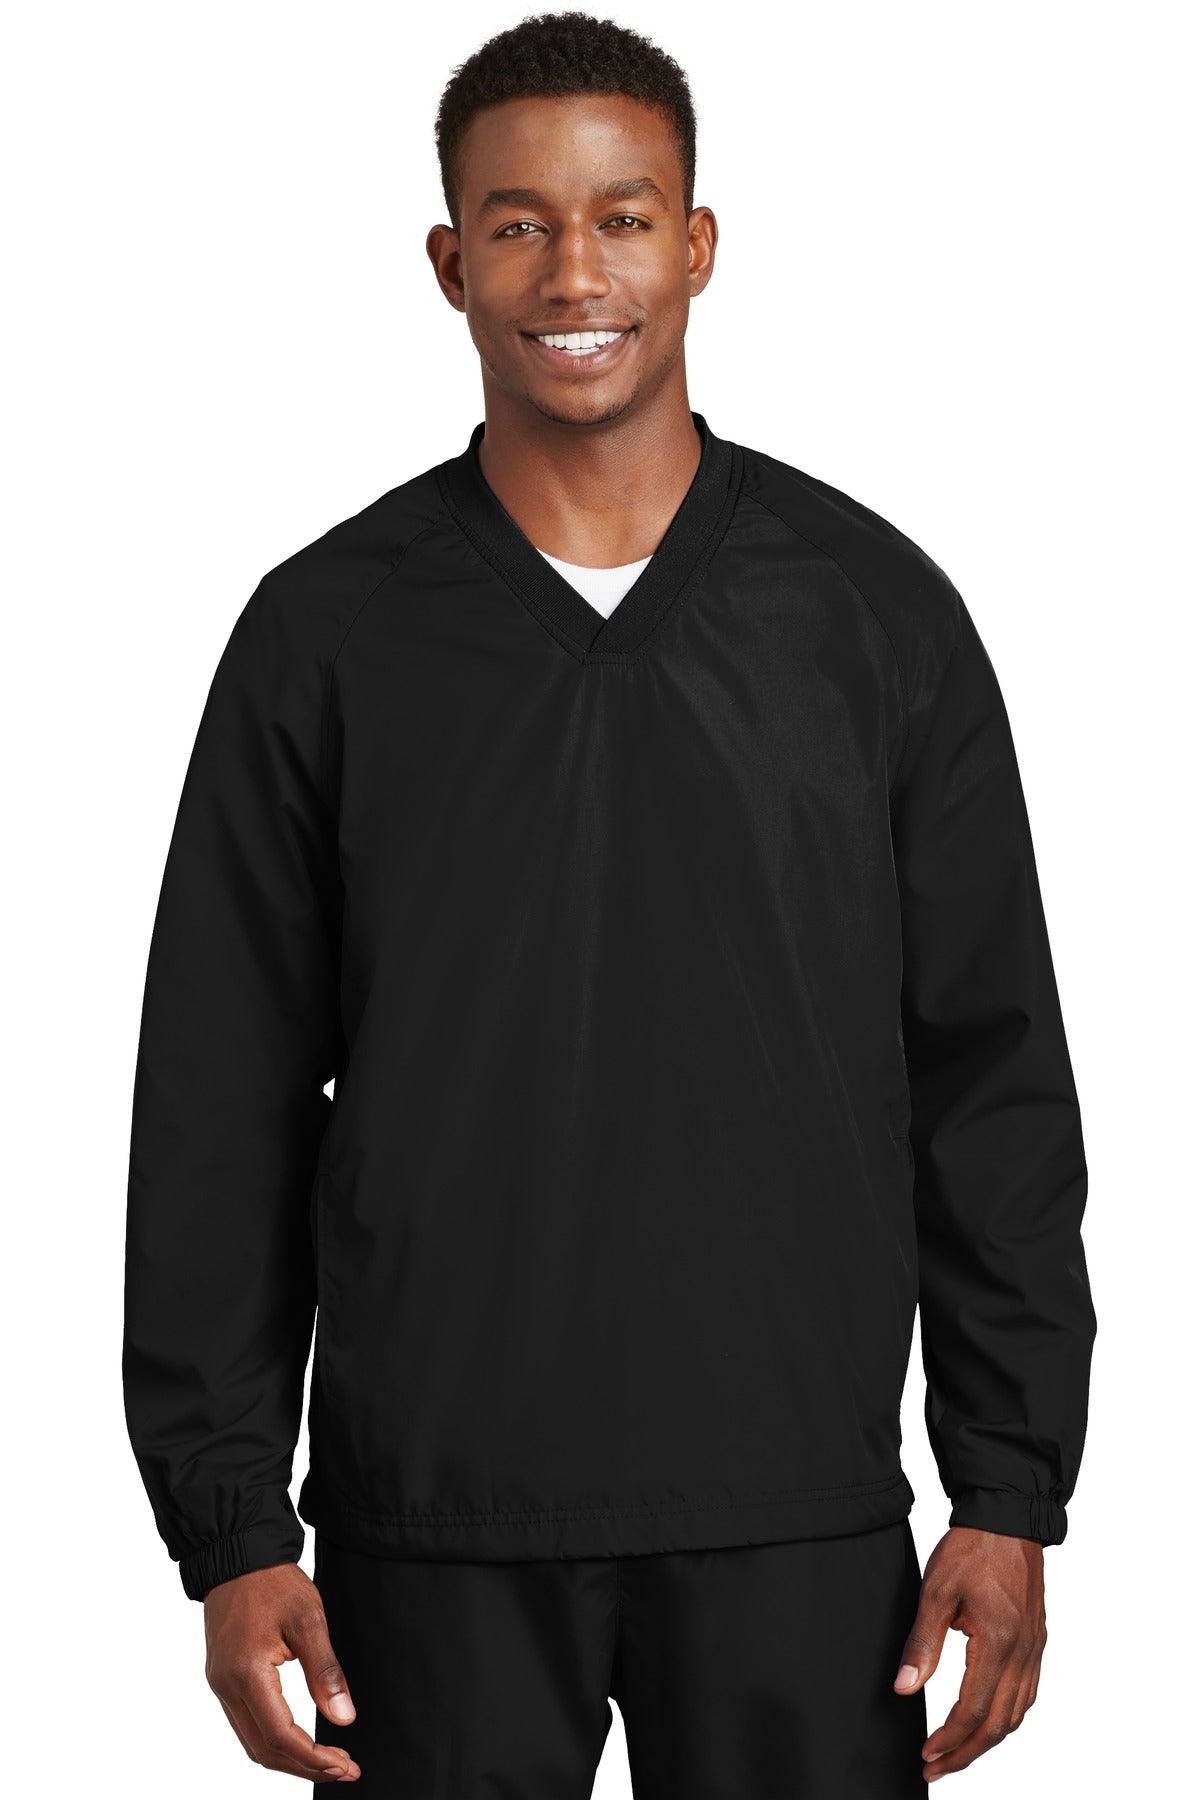 Sport-Tek V-Neck Raglan Wind Shirt. JST72 - Dresses Max